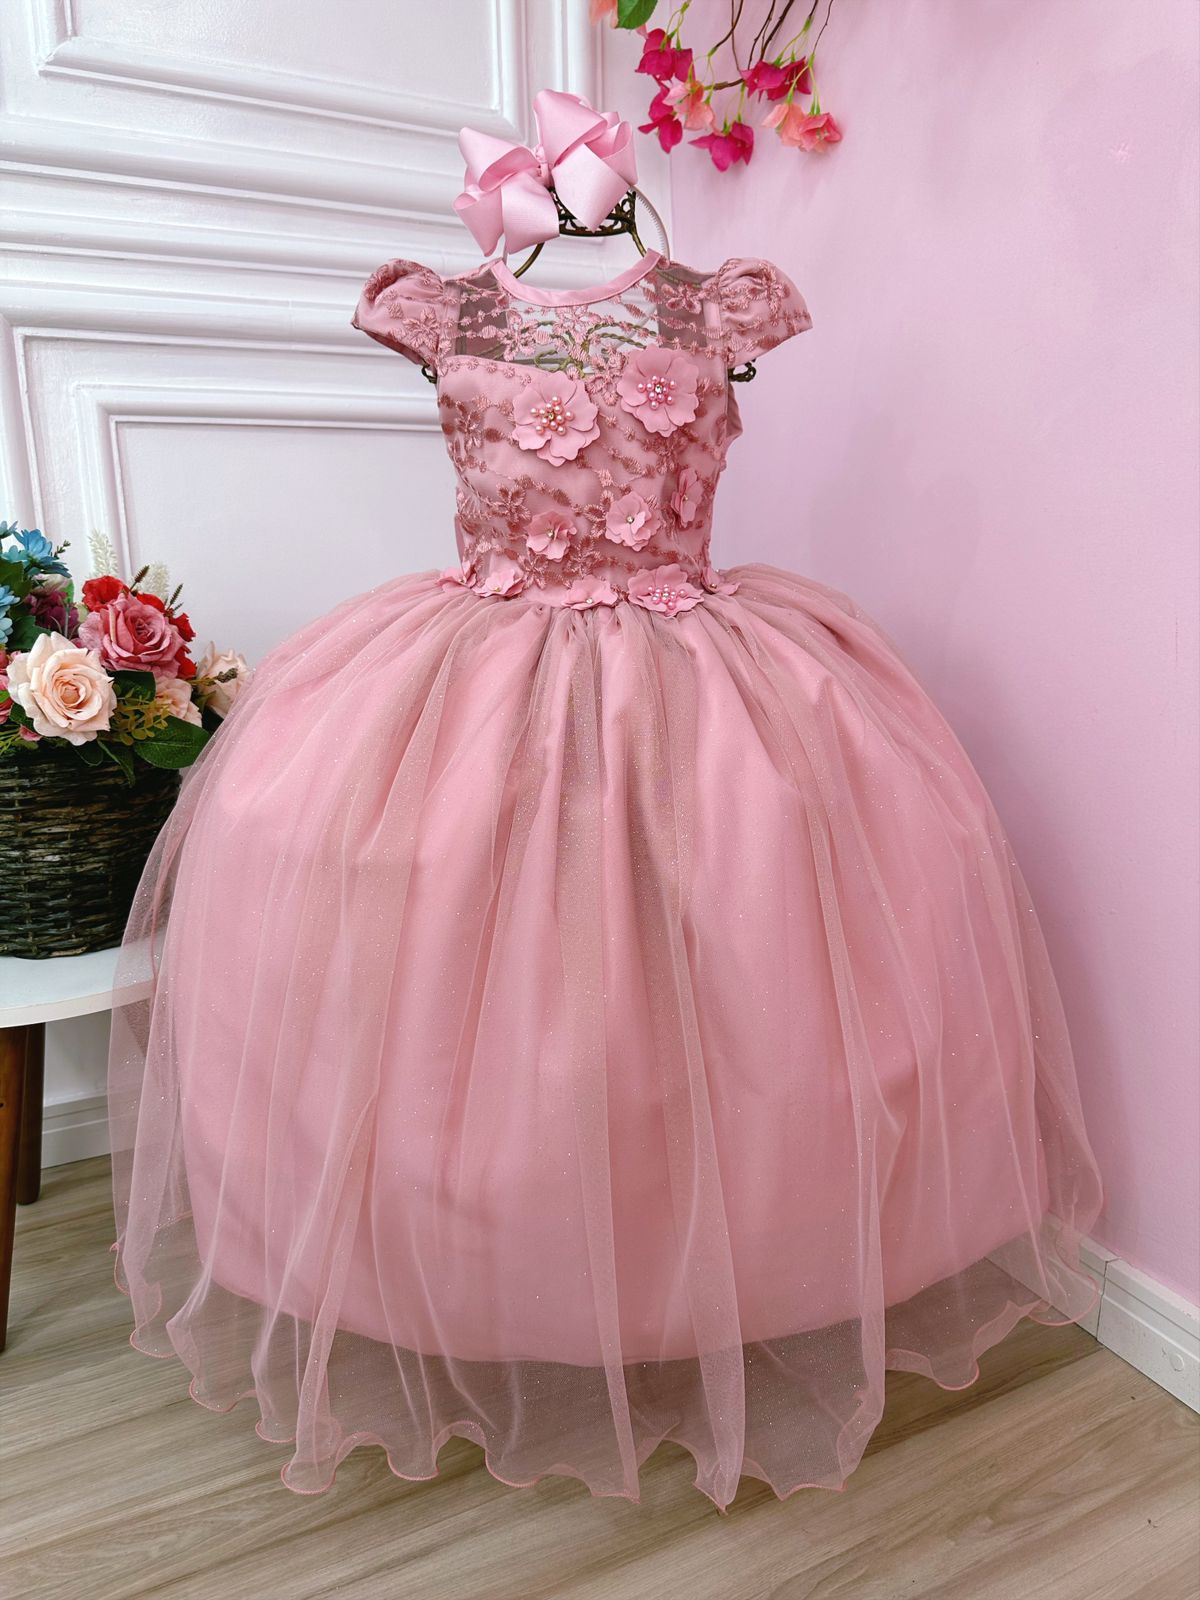 Vestido Infantil Rose C/ Aplique Flores e Renda Damas Luxo